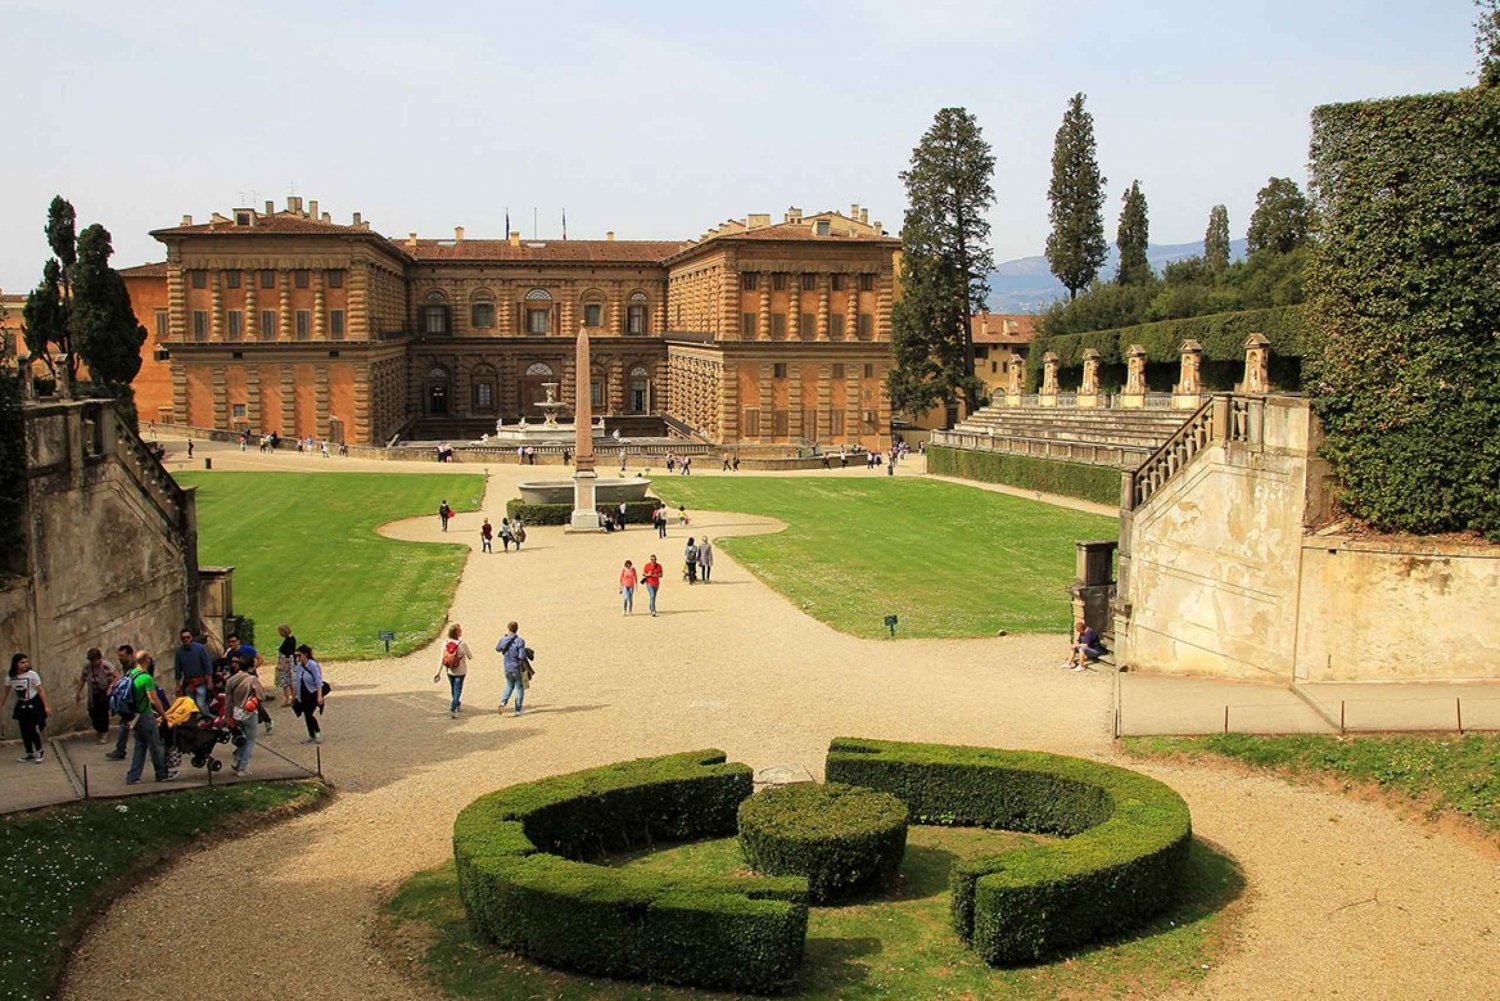 Firenze: Pitti Palace ja Bobolin puutarhat -kävelykierros